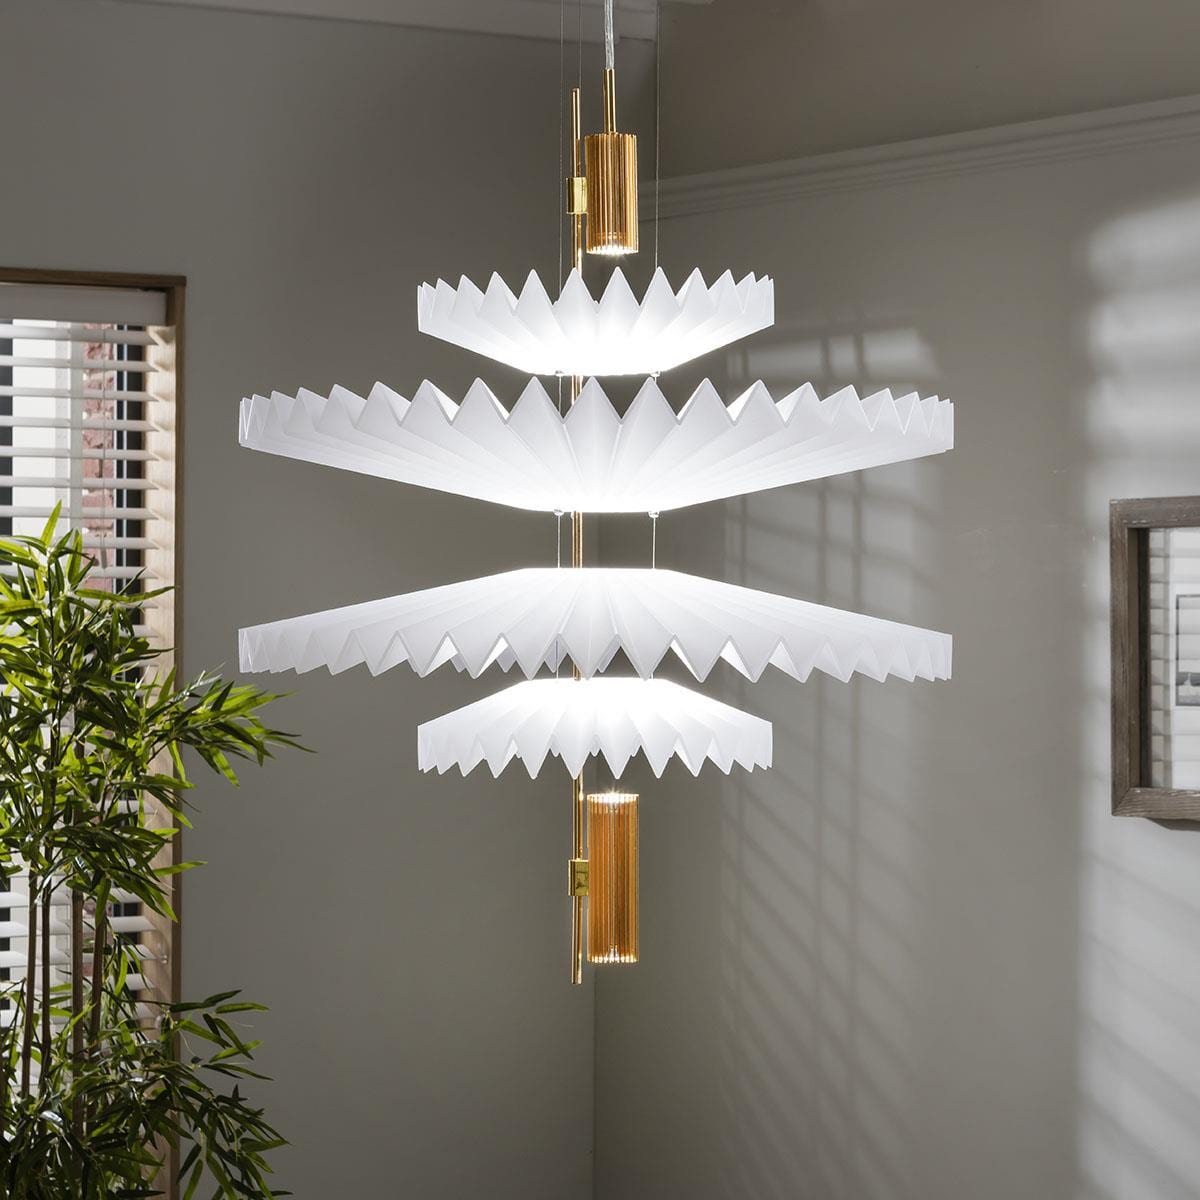 Quatropi Luxury Retro-Inspired Ceiling Light - Luxury White & Gold Pendant 60cm